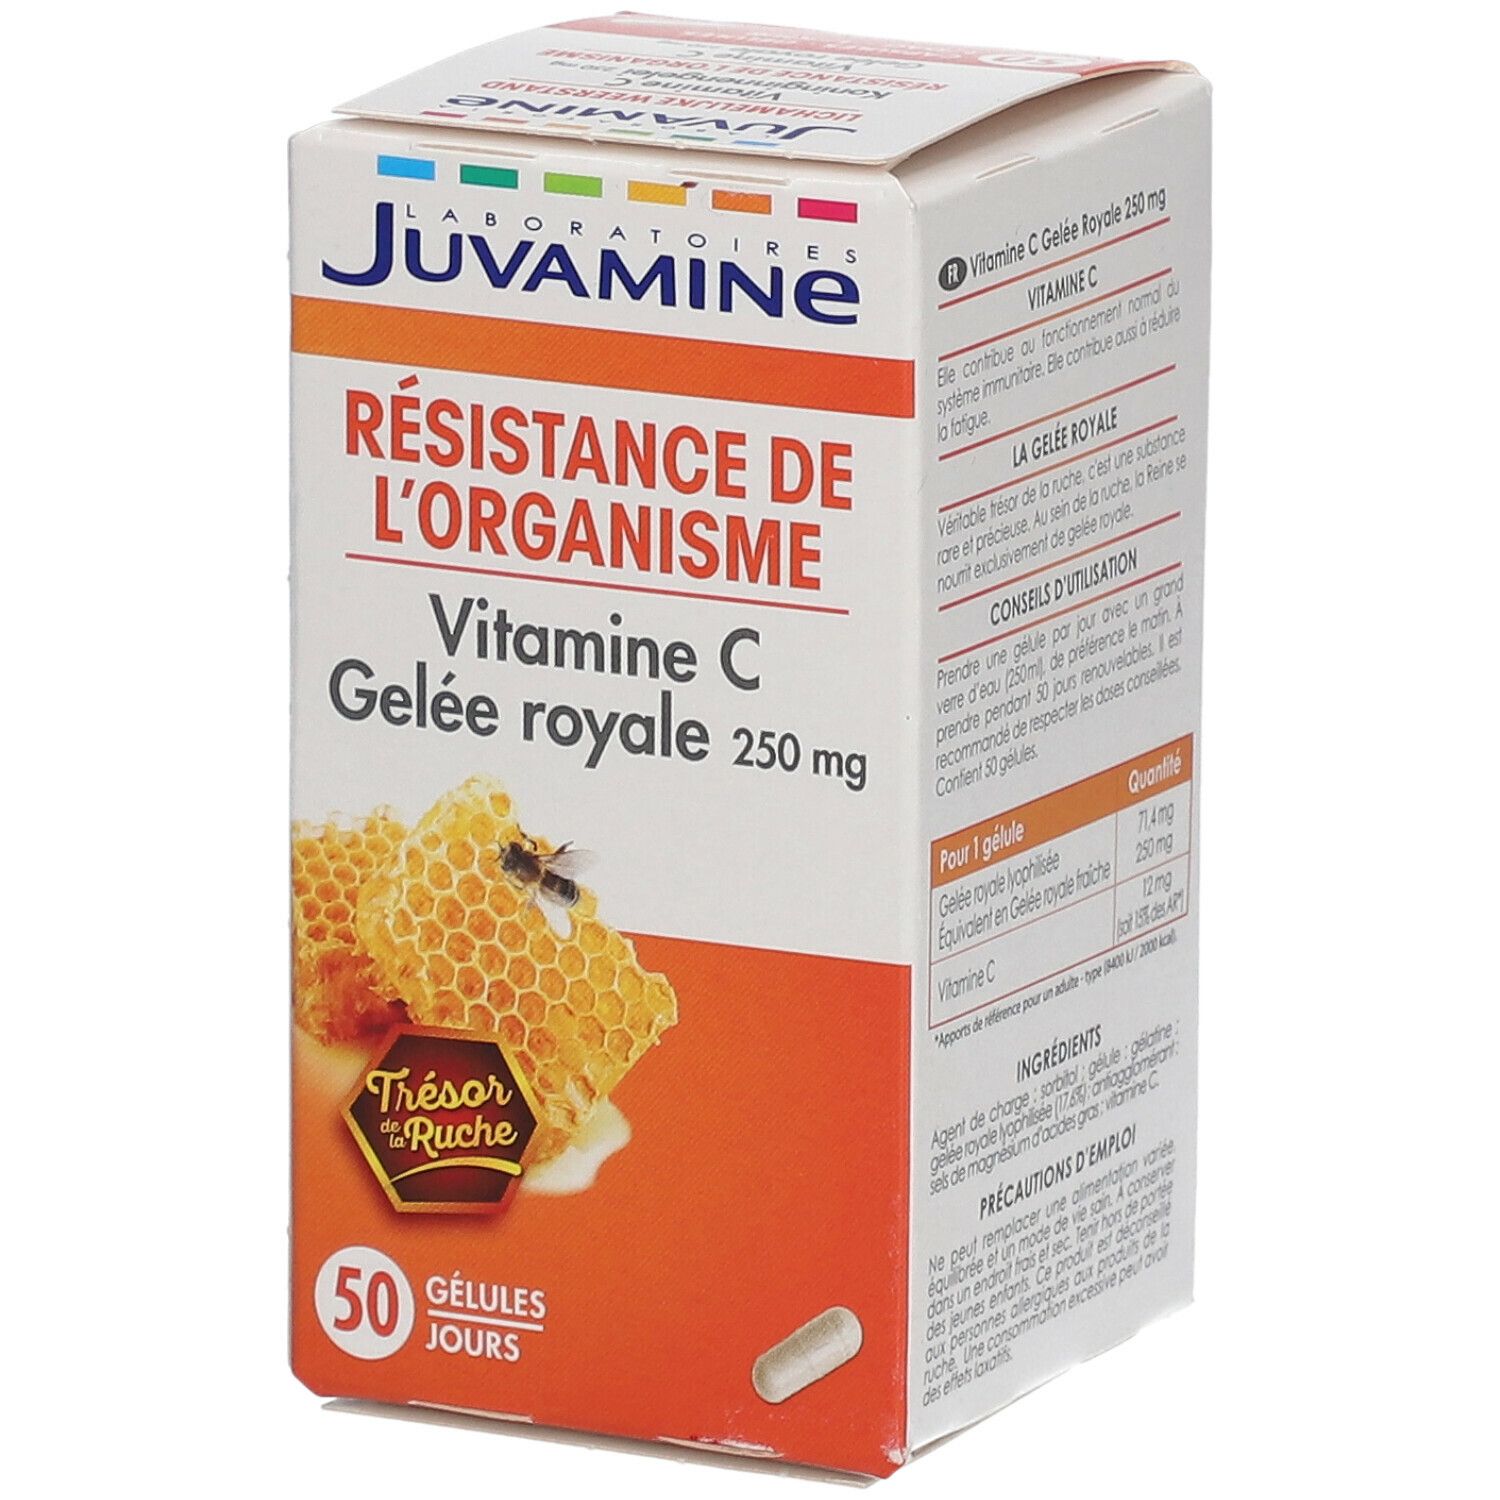 Juvamine Vitamine C + Gelée royale 250 mg